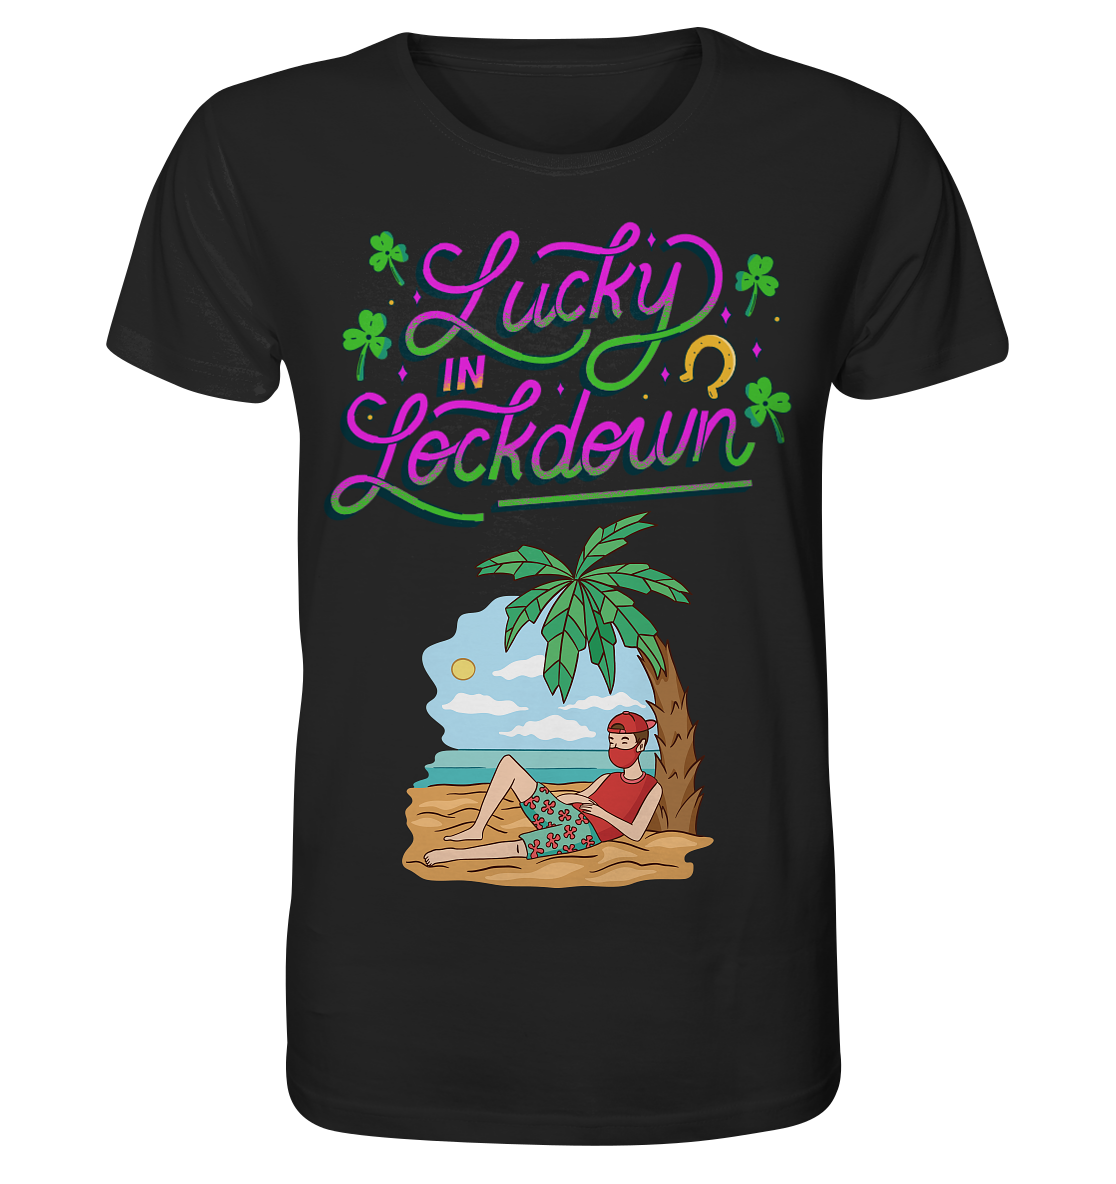 Lucky in Lockdown - Organic Shirt - Online Kaufhaus München